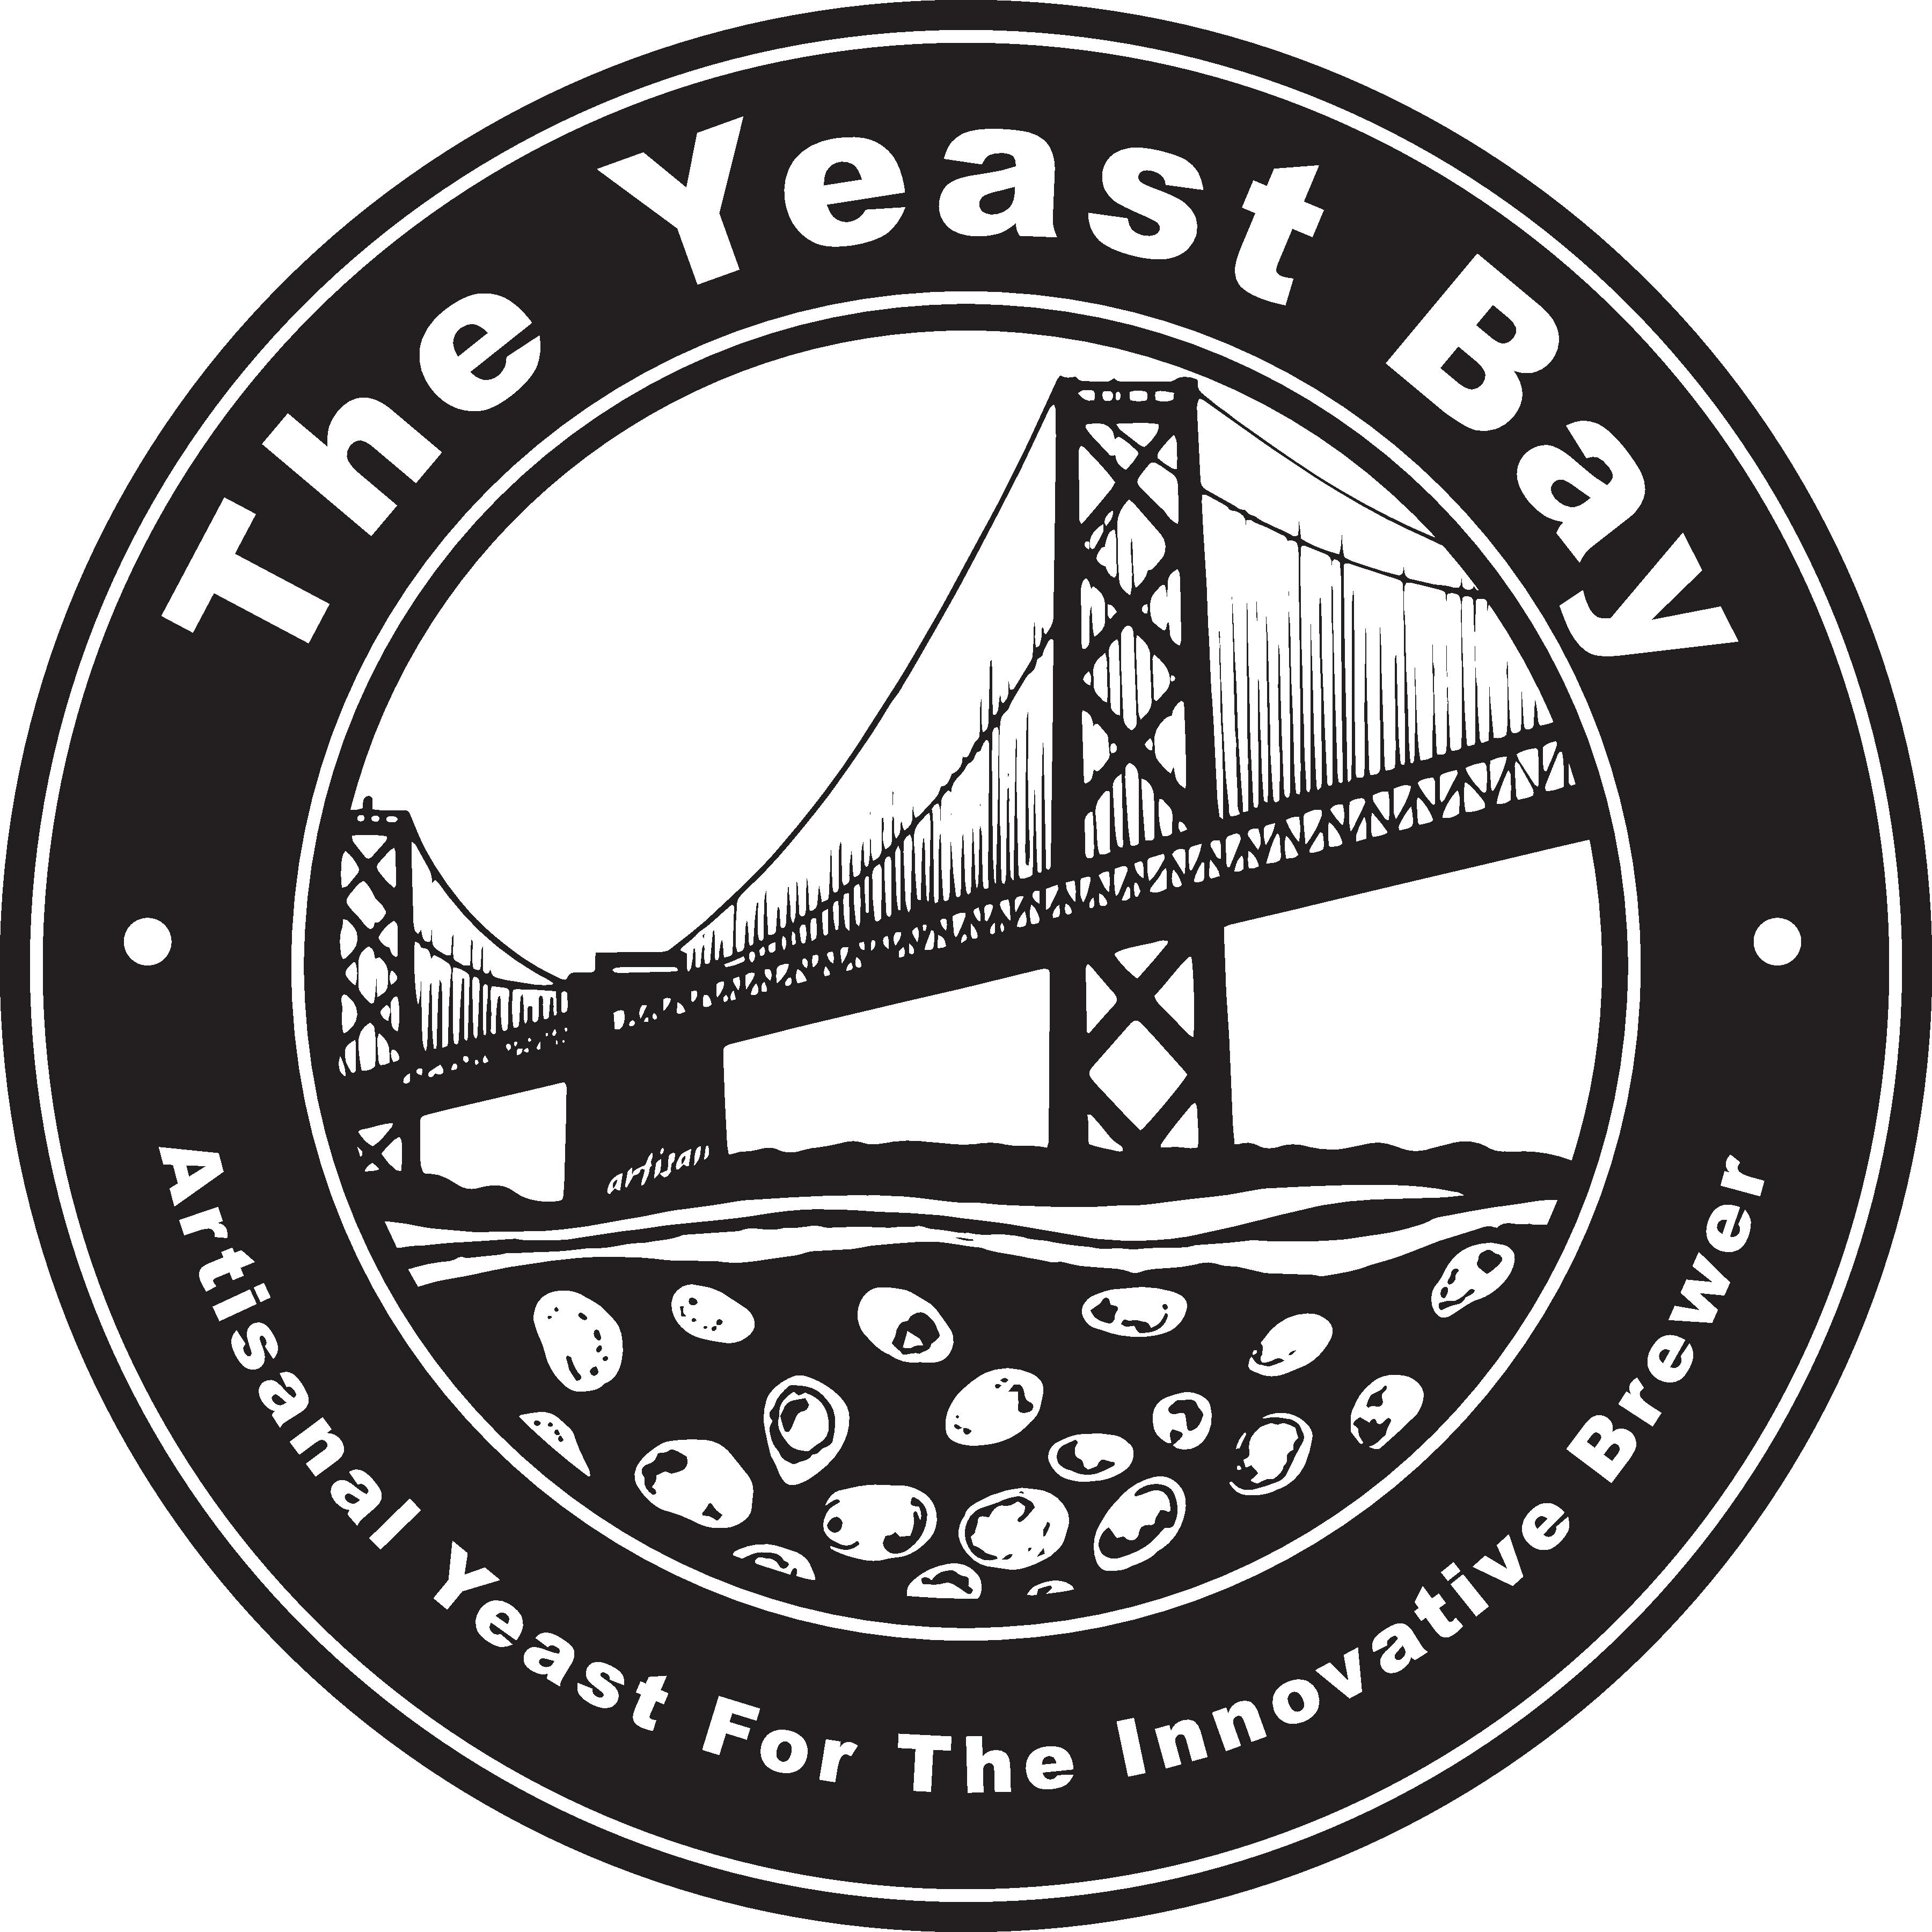 Yeast Bay